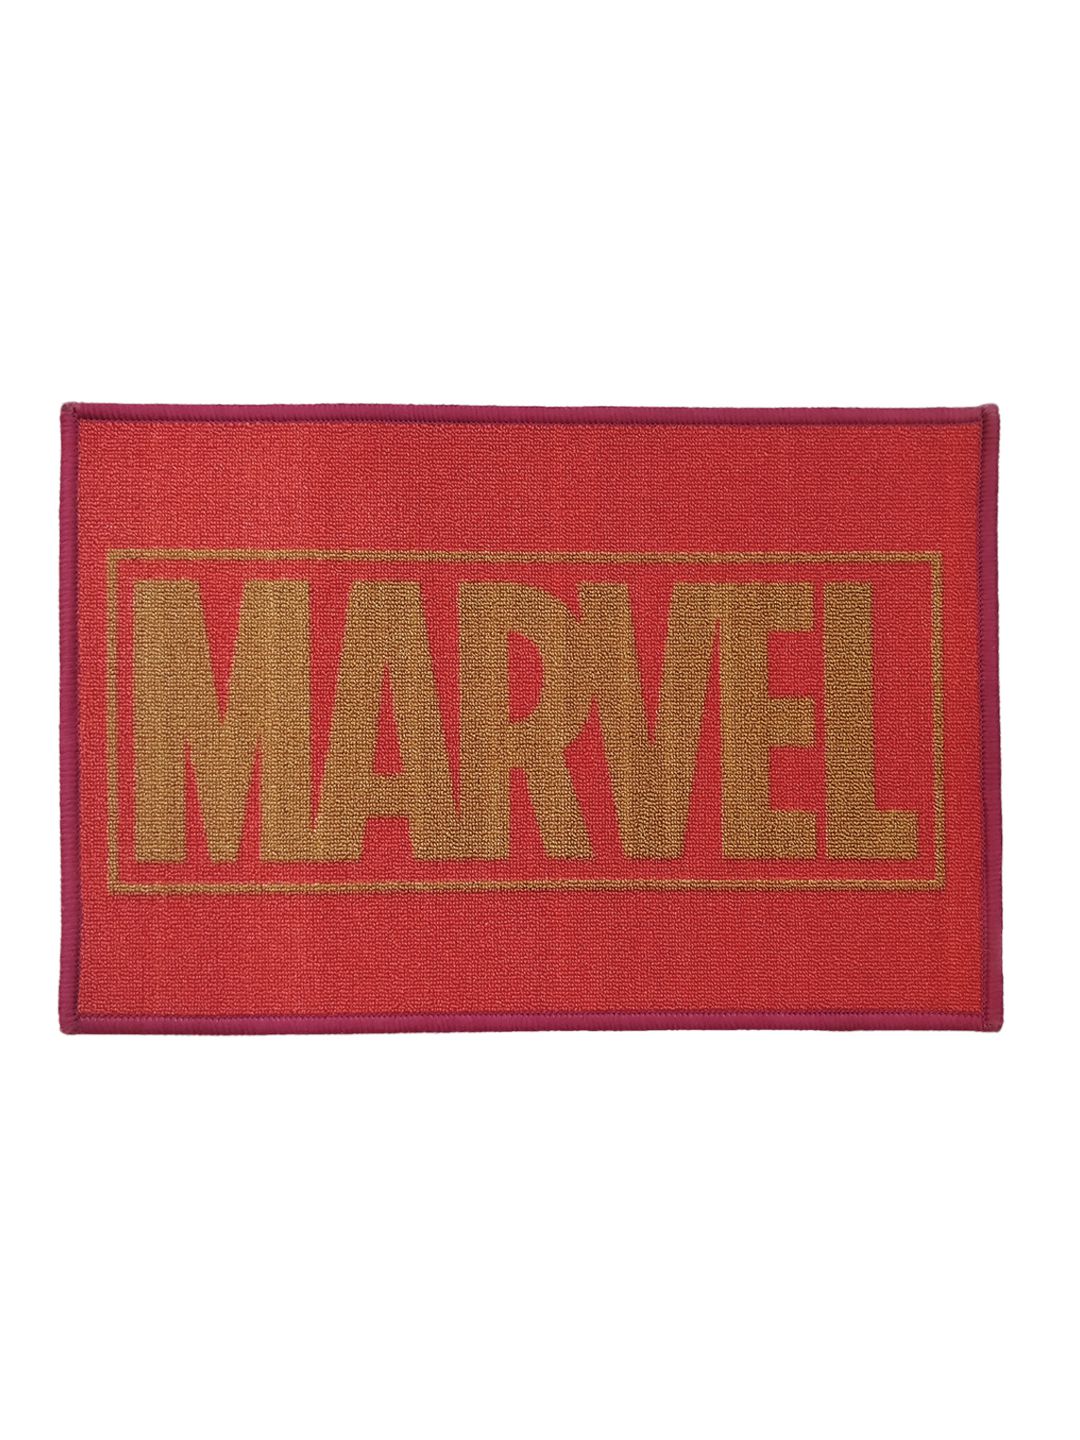 Marvel Red Single Antiskid Door Mat Buy Marvel Red